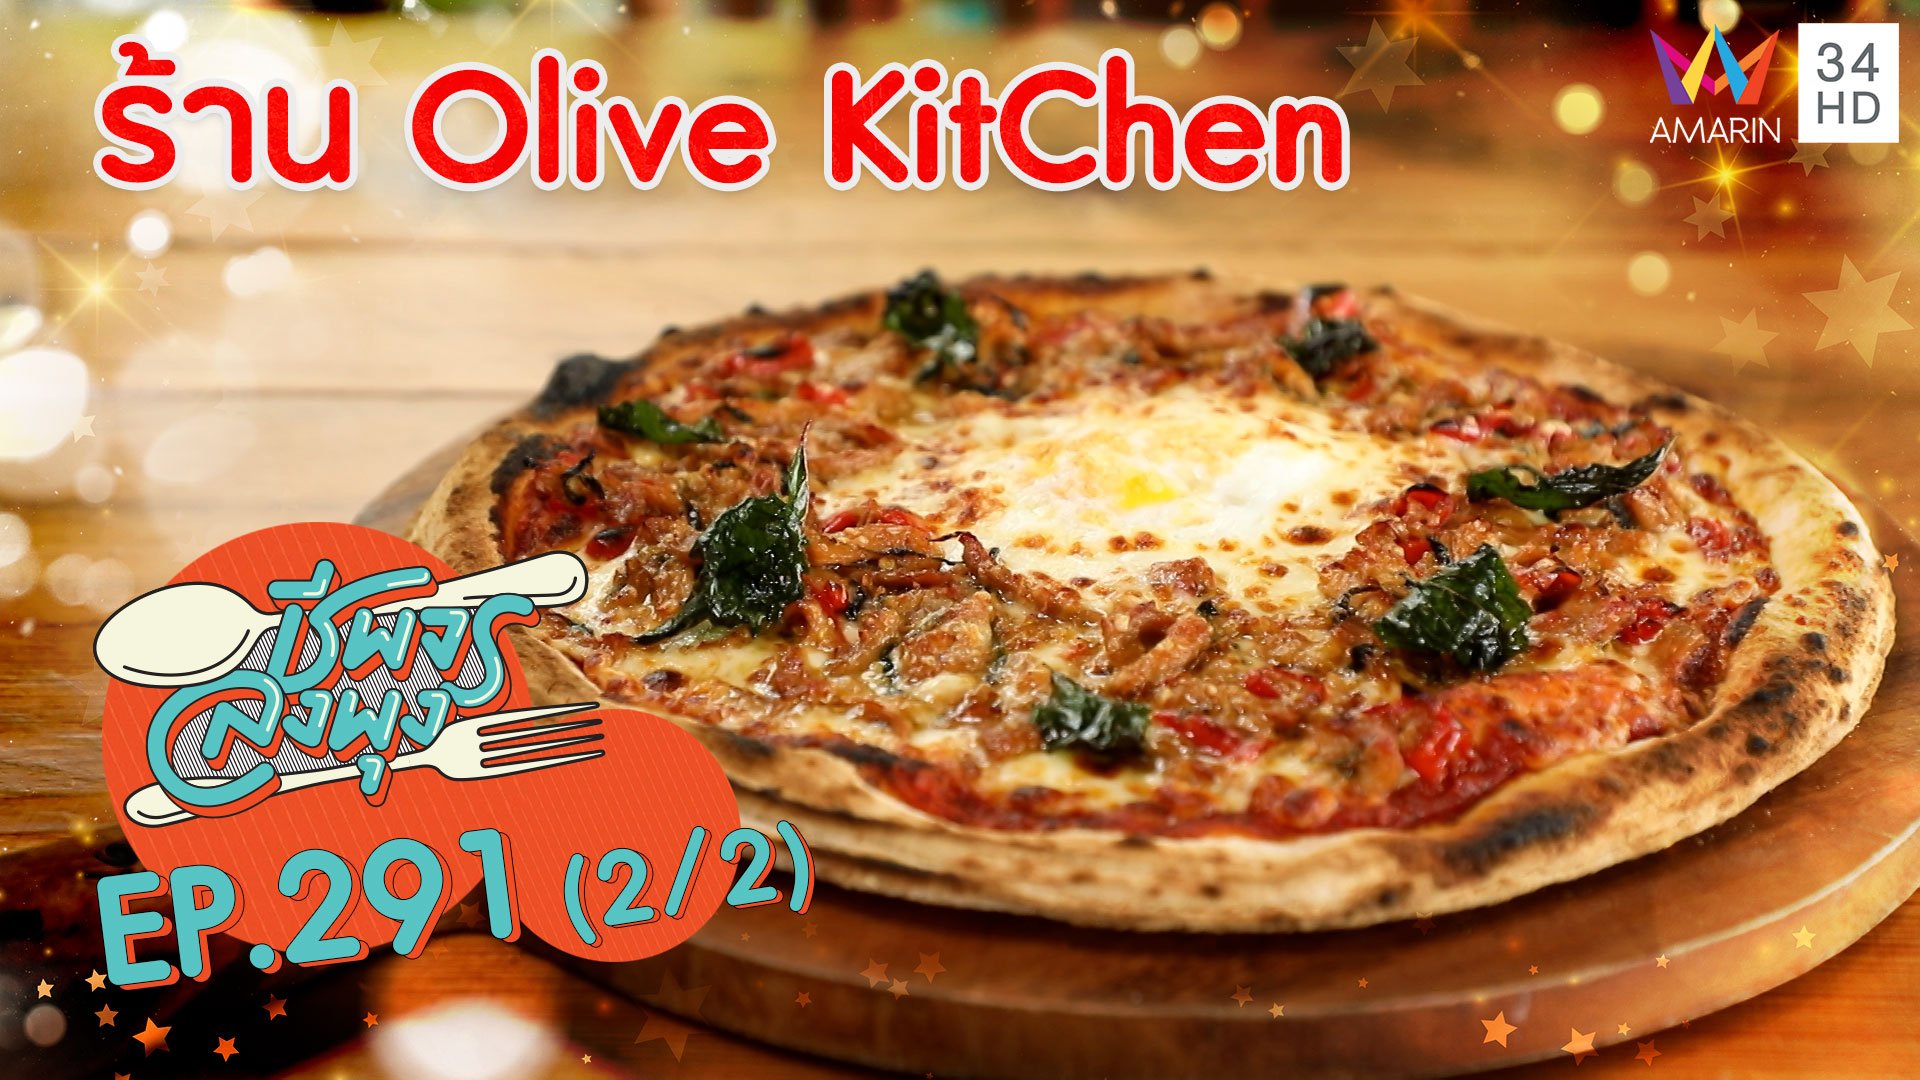 อาหารอิตาเลียนรสชาติเข้มข้น @ ร้าน Olive KitChen | ชีพจรลงพุง | 4 เม.ย. 64 (2/2) | AMARIN TVHD34